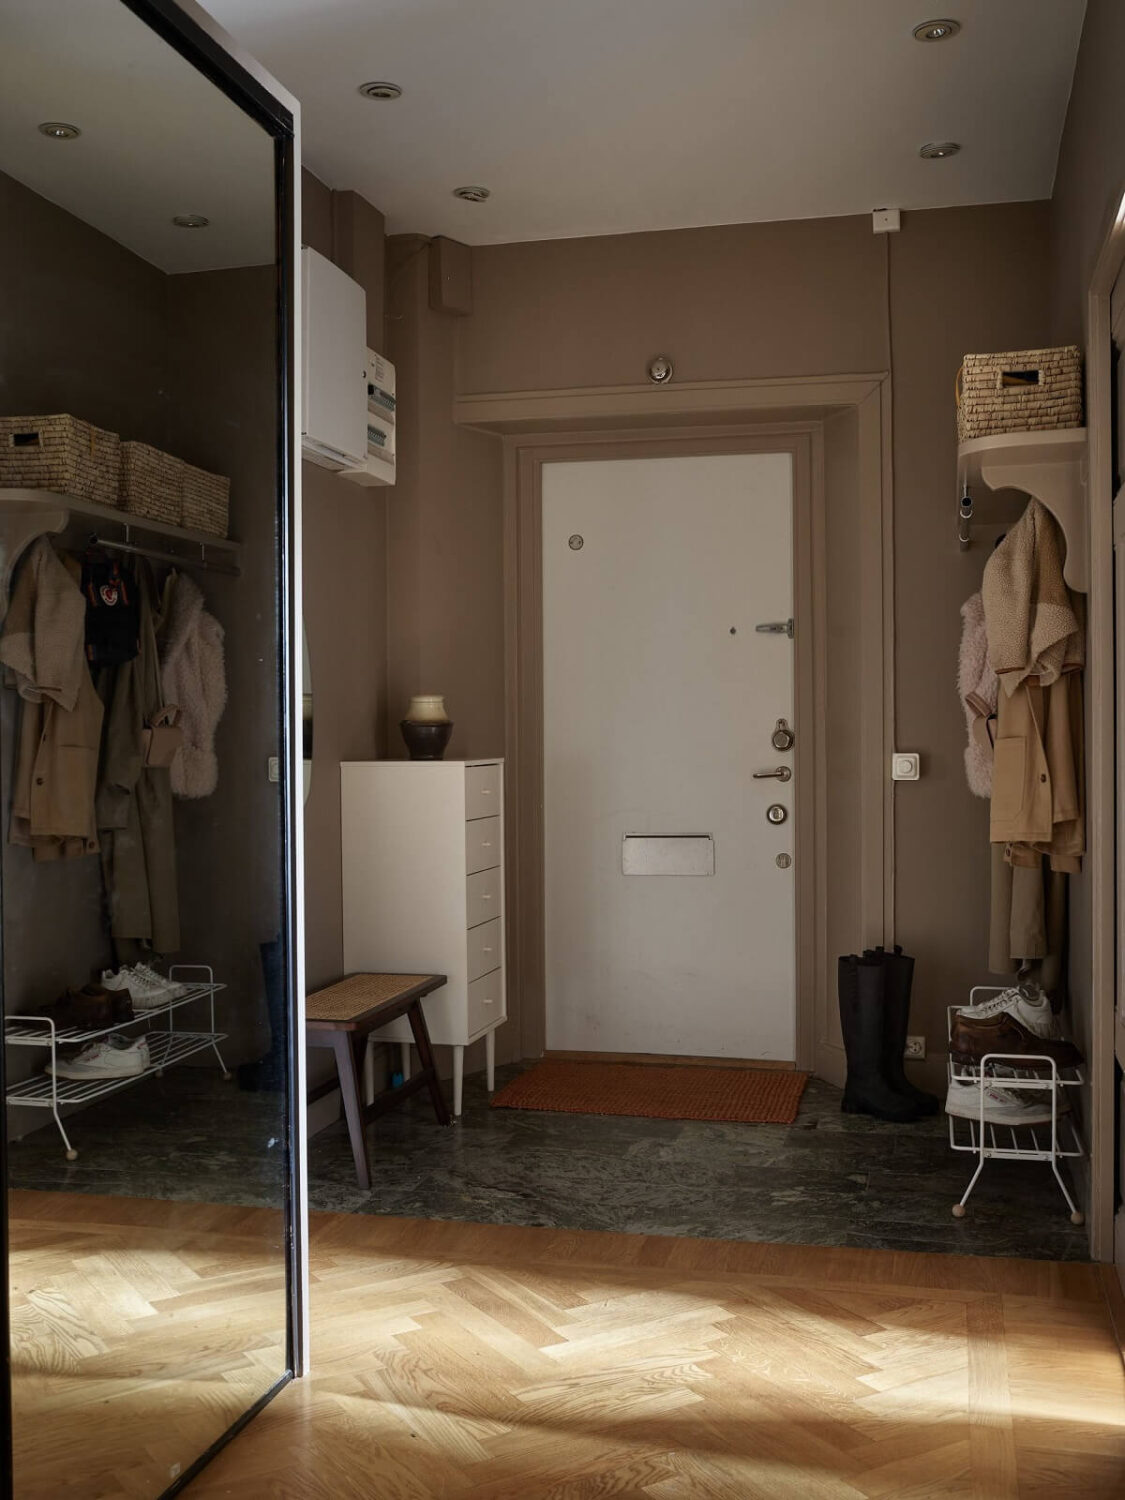 brown-hallway-mirror-closet-wooden-floor-nordroom